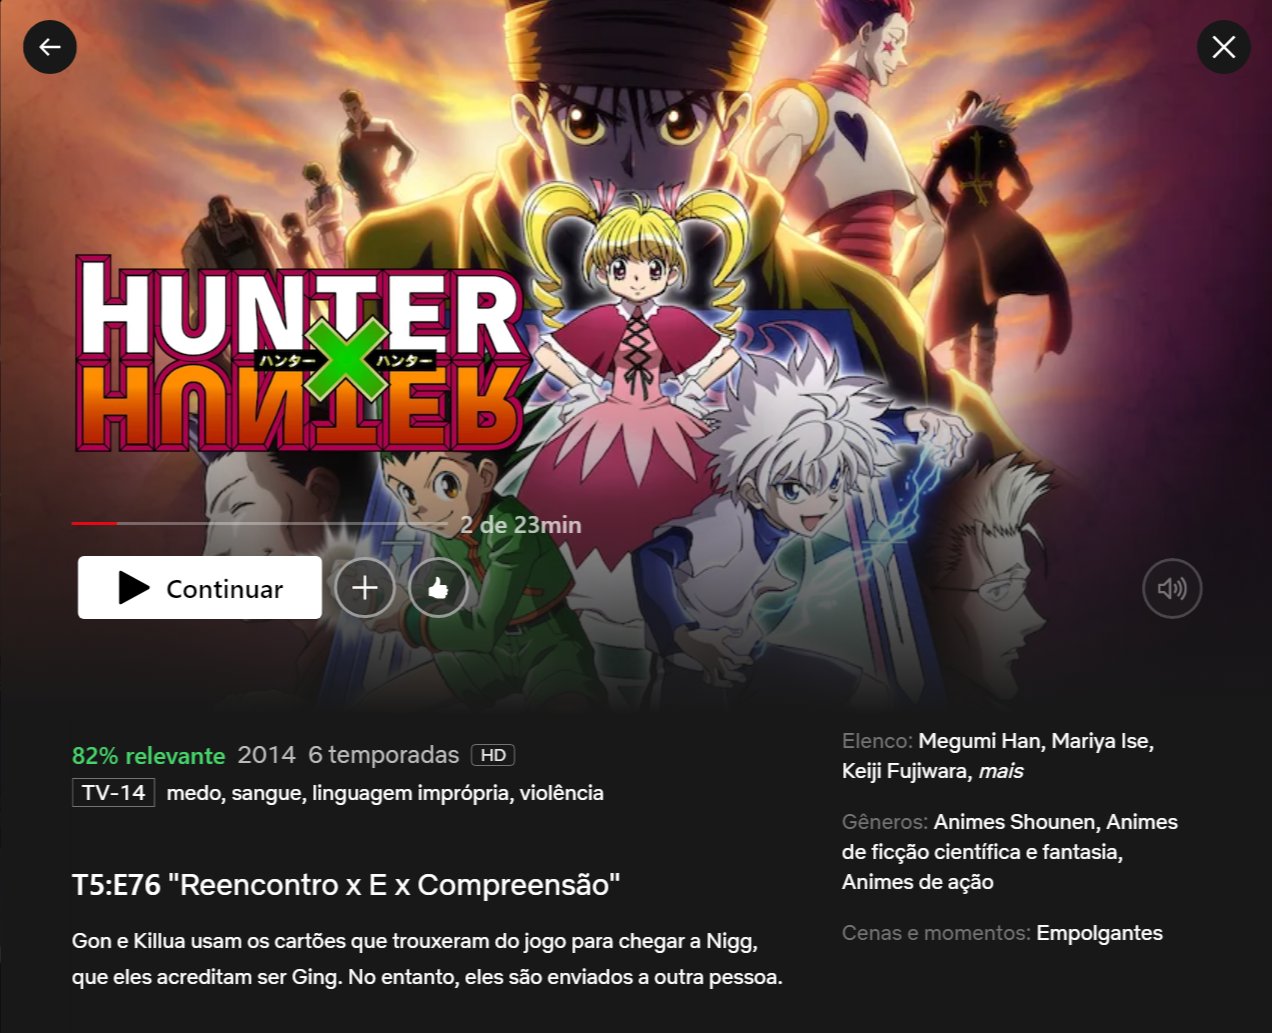 Portal Netflix BR  Fan Account on X: O anime Hunter x Hunter (2011)  retornará ao catálogo da @NetflixBrasil futuramente. Os episódios começaram  a receber dublagem em português na Netflix dos Estados